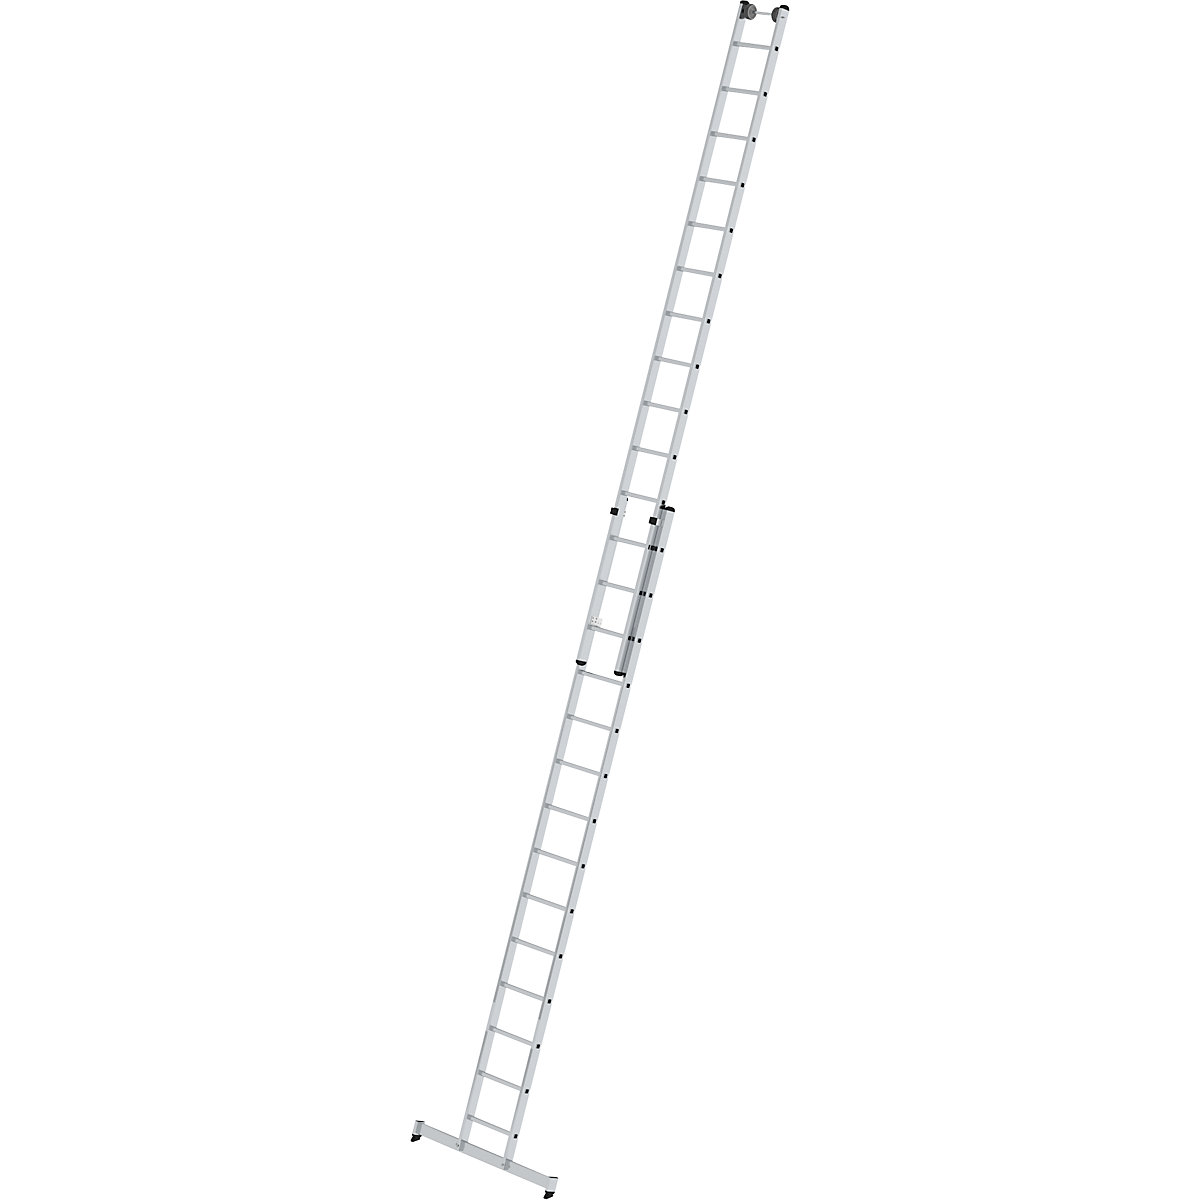 Escada de encosto ajustável em altura – MUNK, escada de regulação por deslize, 2 peças, 2 x 14 degraus, com travessa nivello®-11